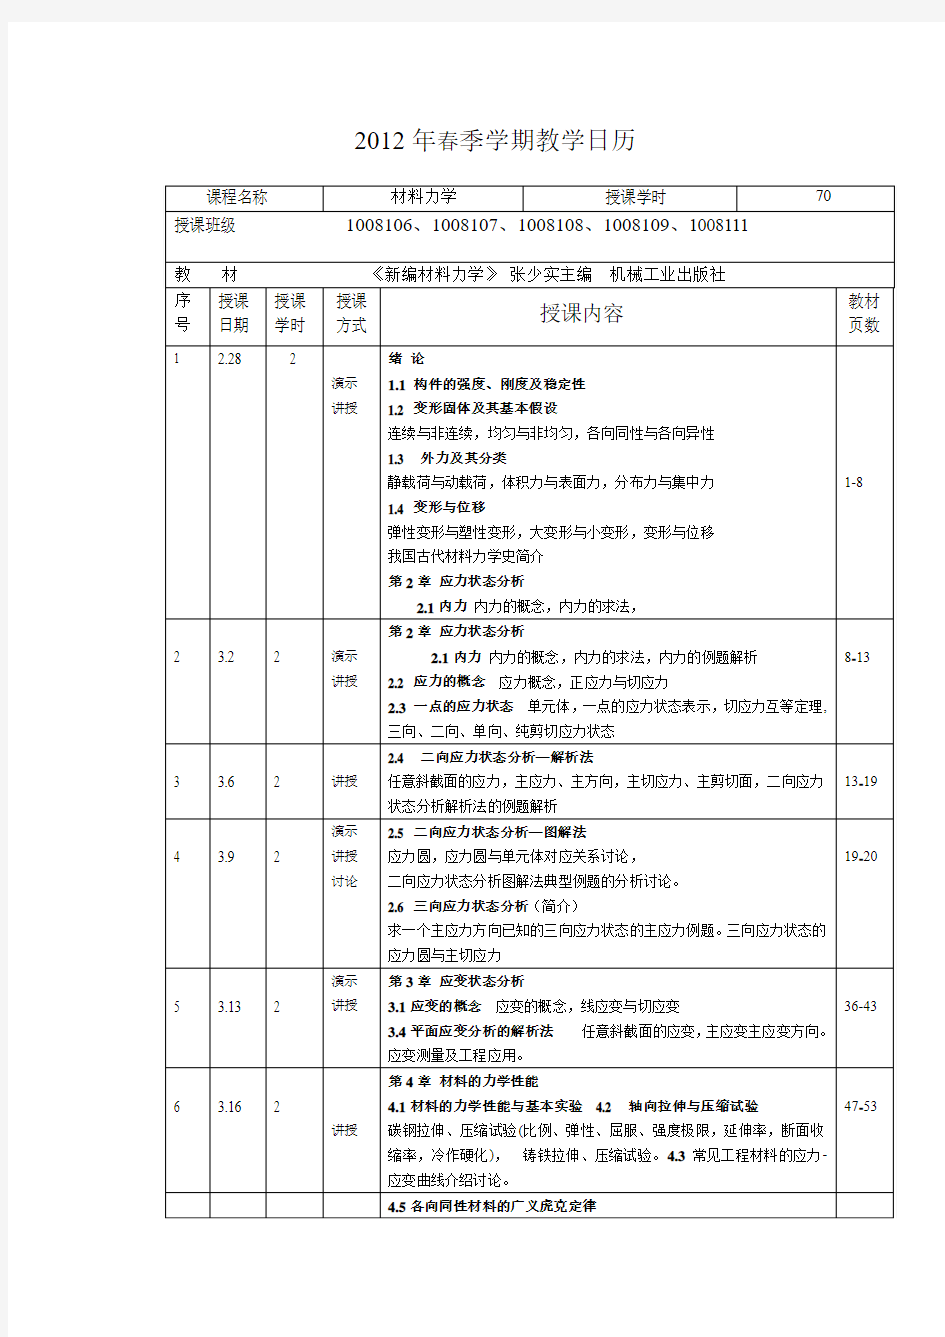 哈工大材料力学2012春教学日历(70)